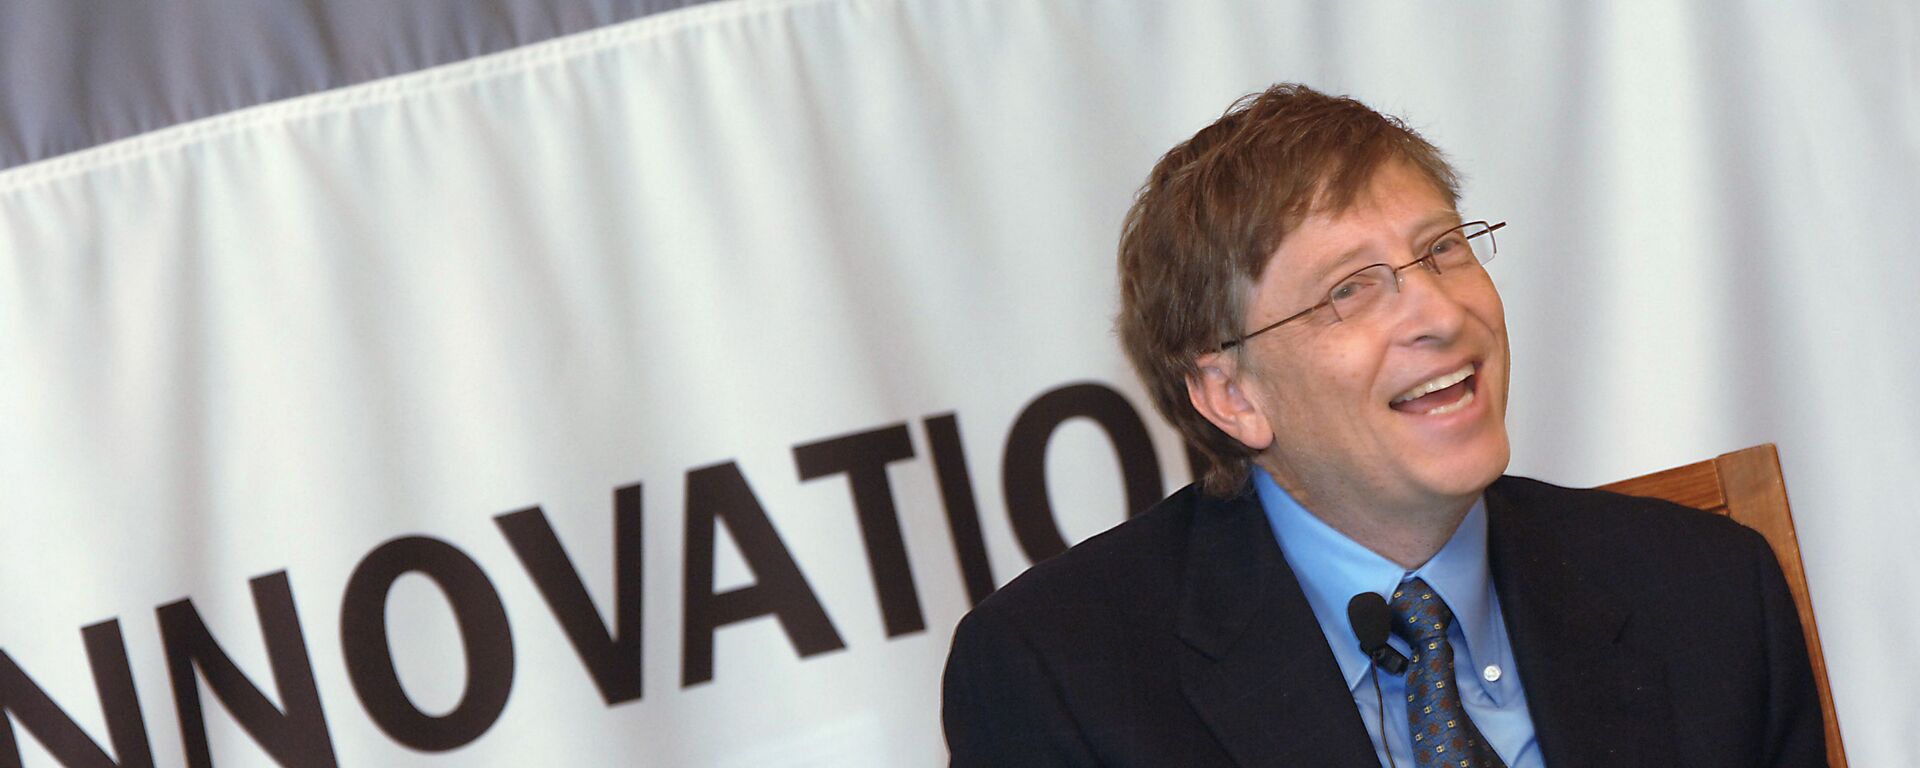 Председатель правления корпорации Microsoft Билл Гейтс в гостинице Националь. - Sputnik Армения, 1920, 29.10.2021